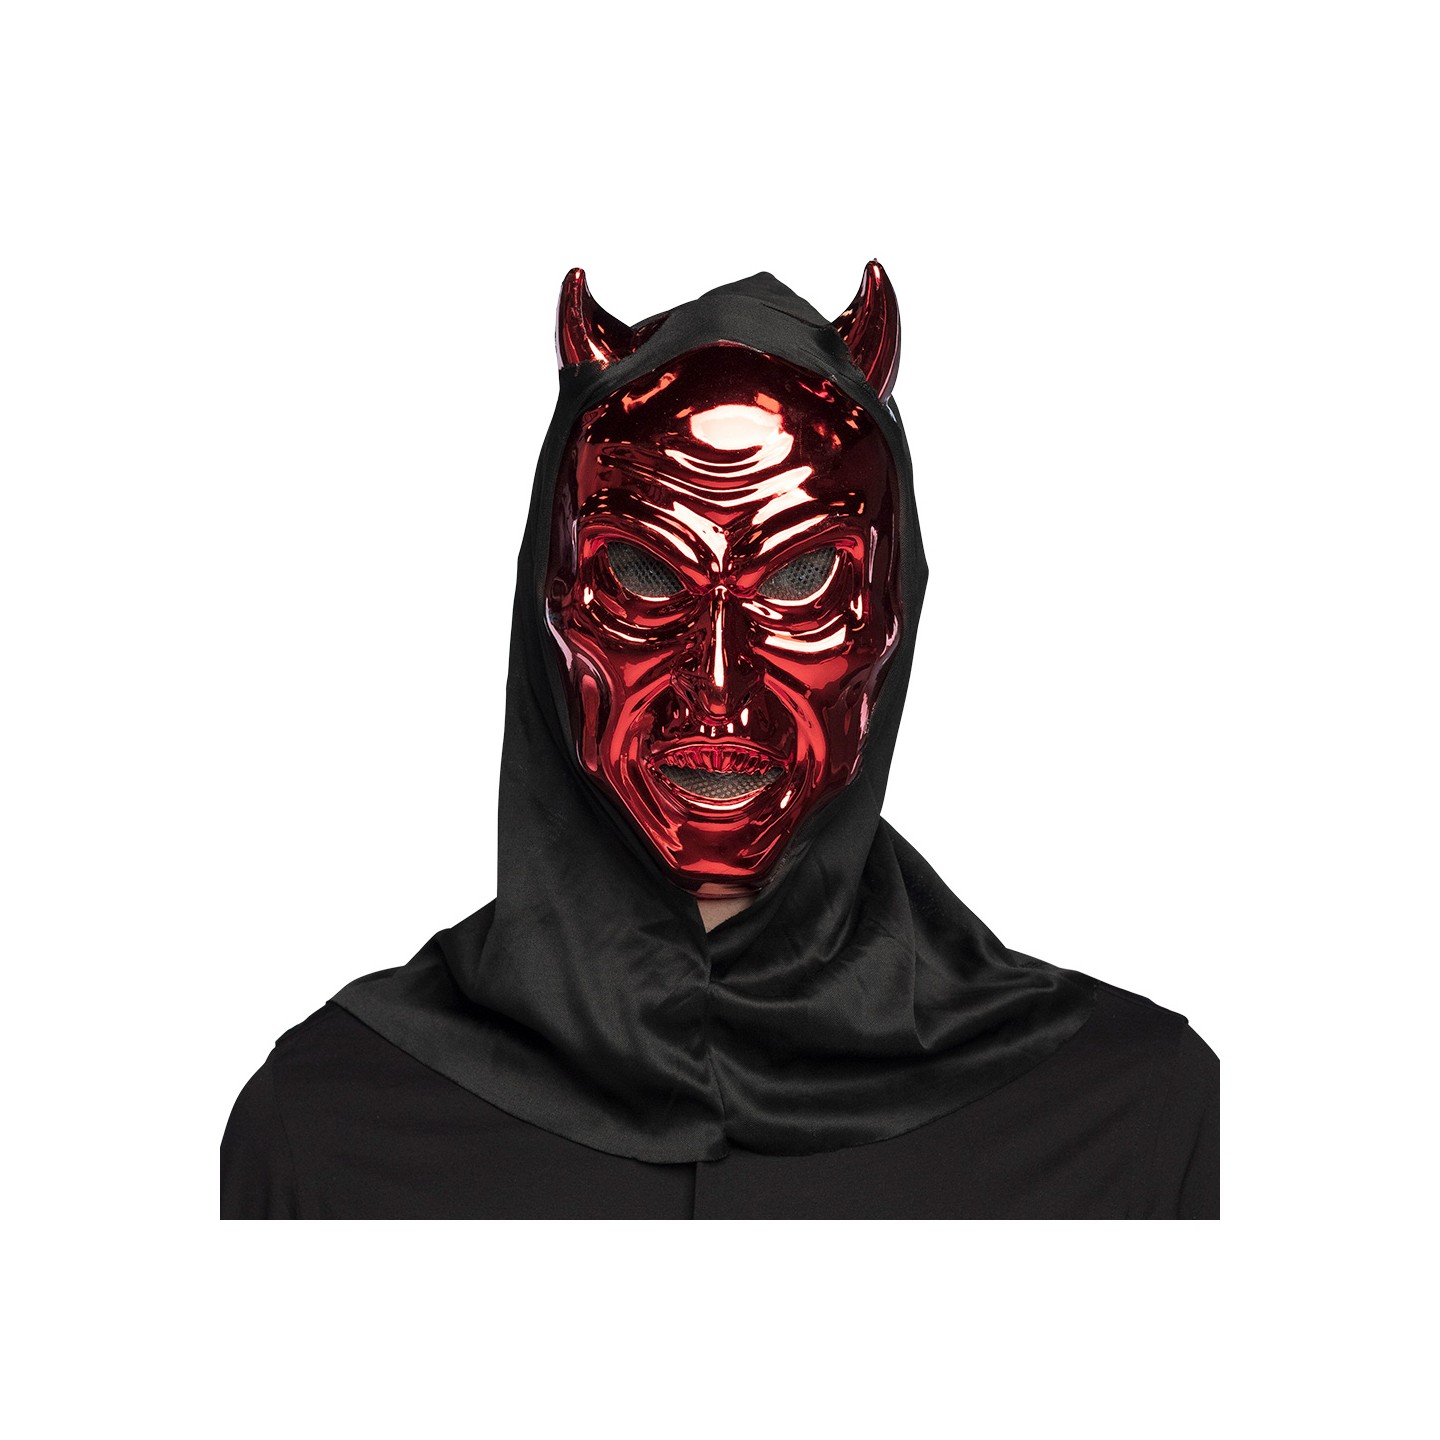 halloween masker duivel met kap rood